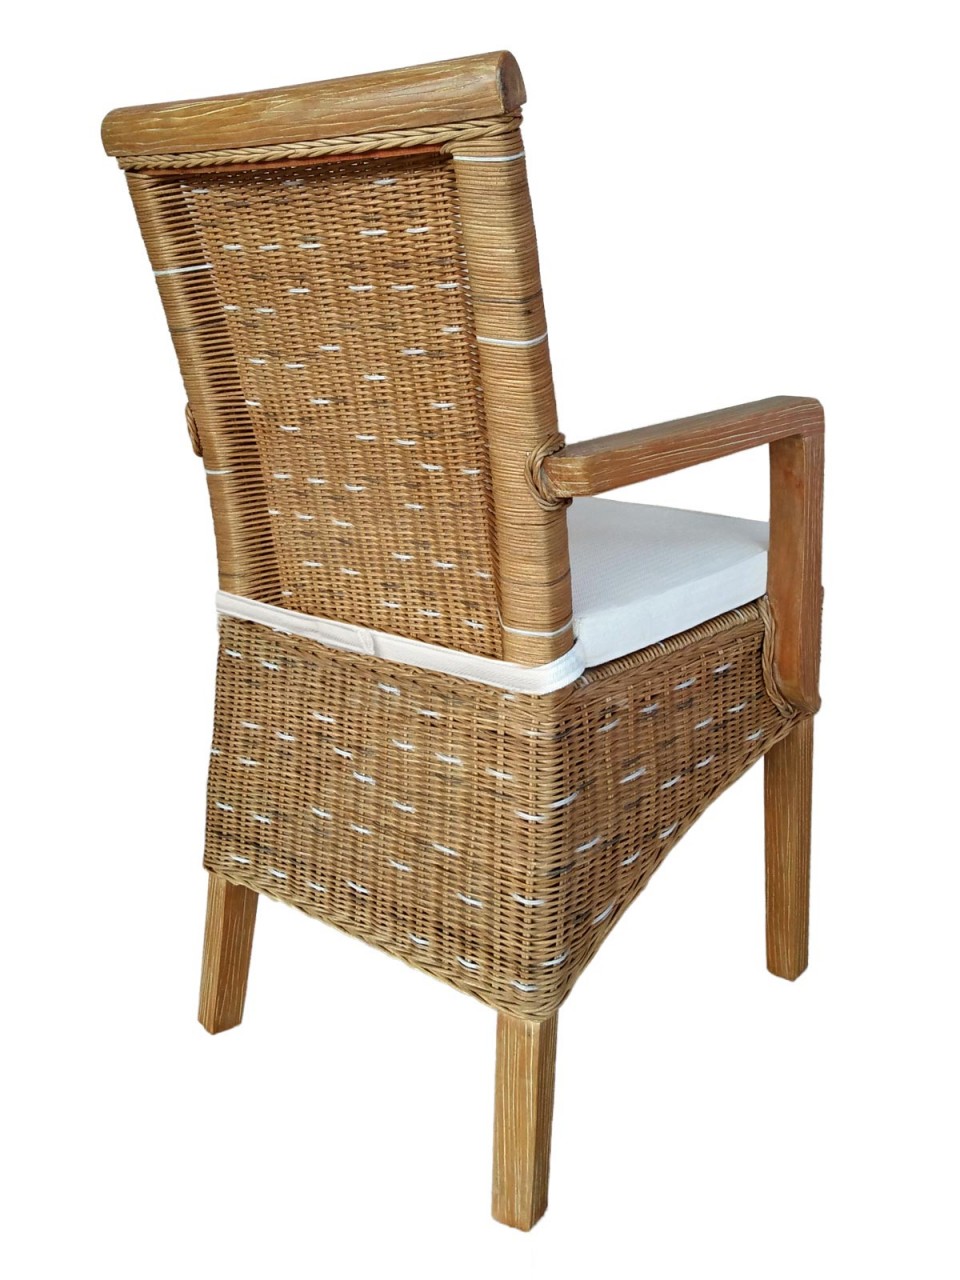 Esszimmer Stühle Set mit Armlehnen 4 Stück Rattanstühle braun Perth Korbstuhl Sessel nachhaltig